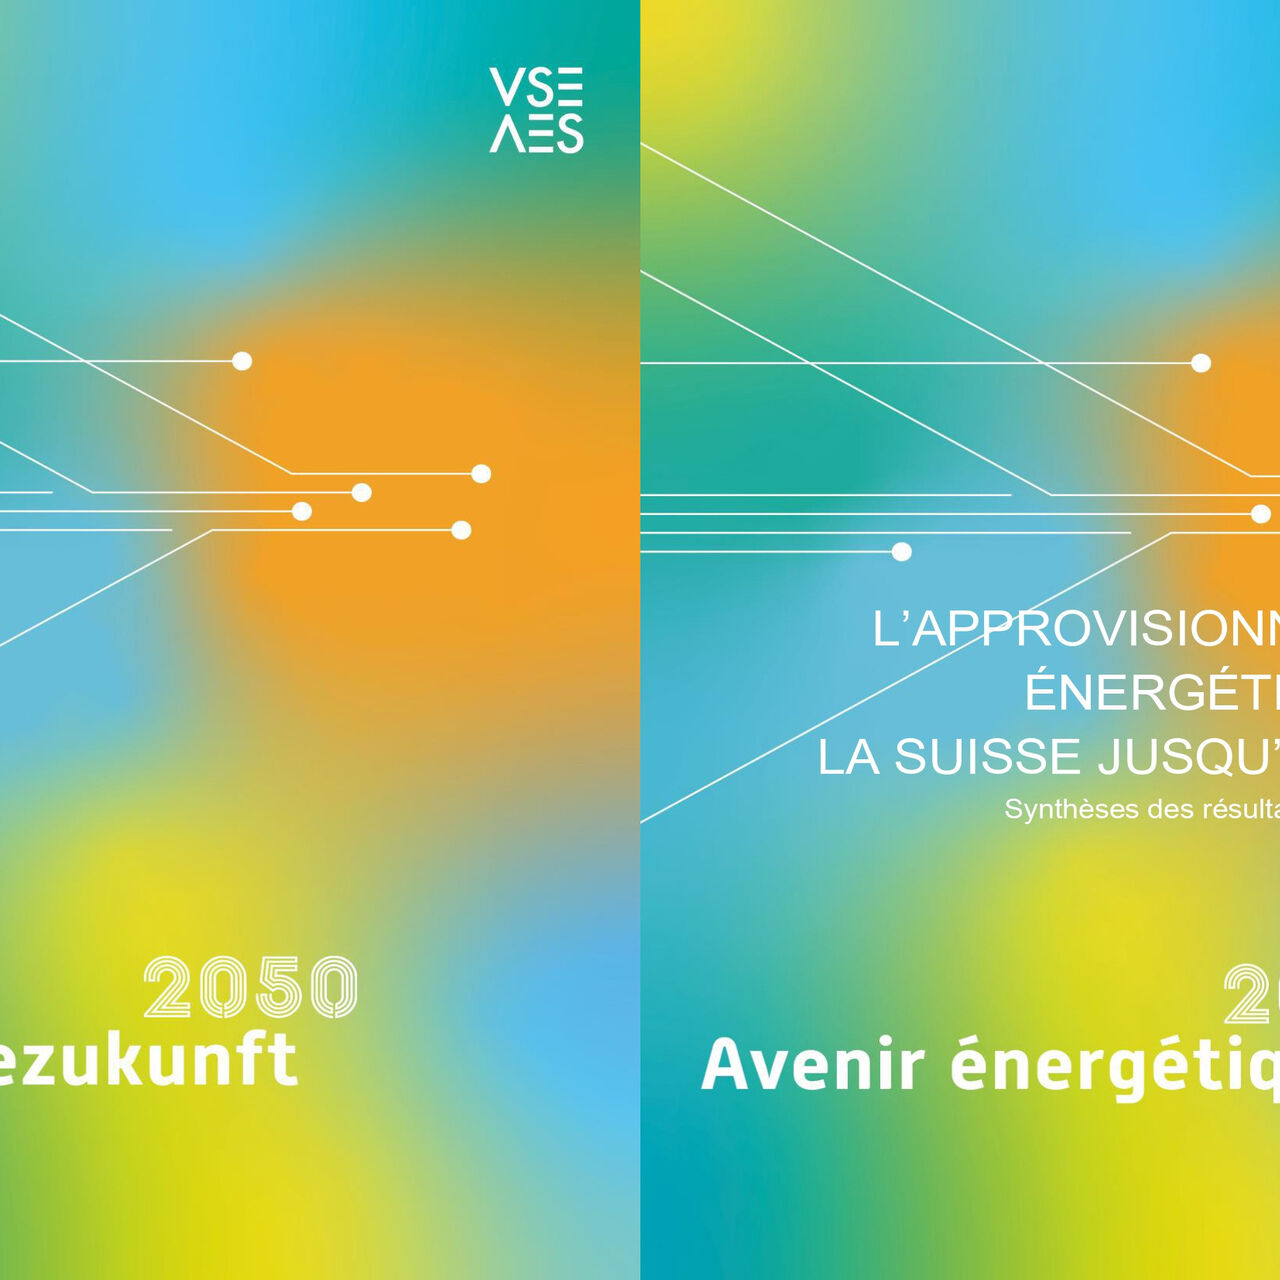 Energy Future 2050: le copertine affiancate del modello scientifico “Energy Future 2050” realizzato in Svizzera da EMPA e VSE/AES (in lingua francese e tedesca)